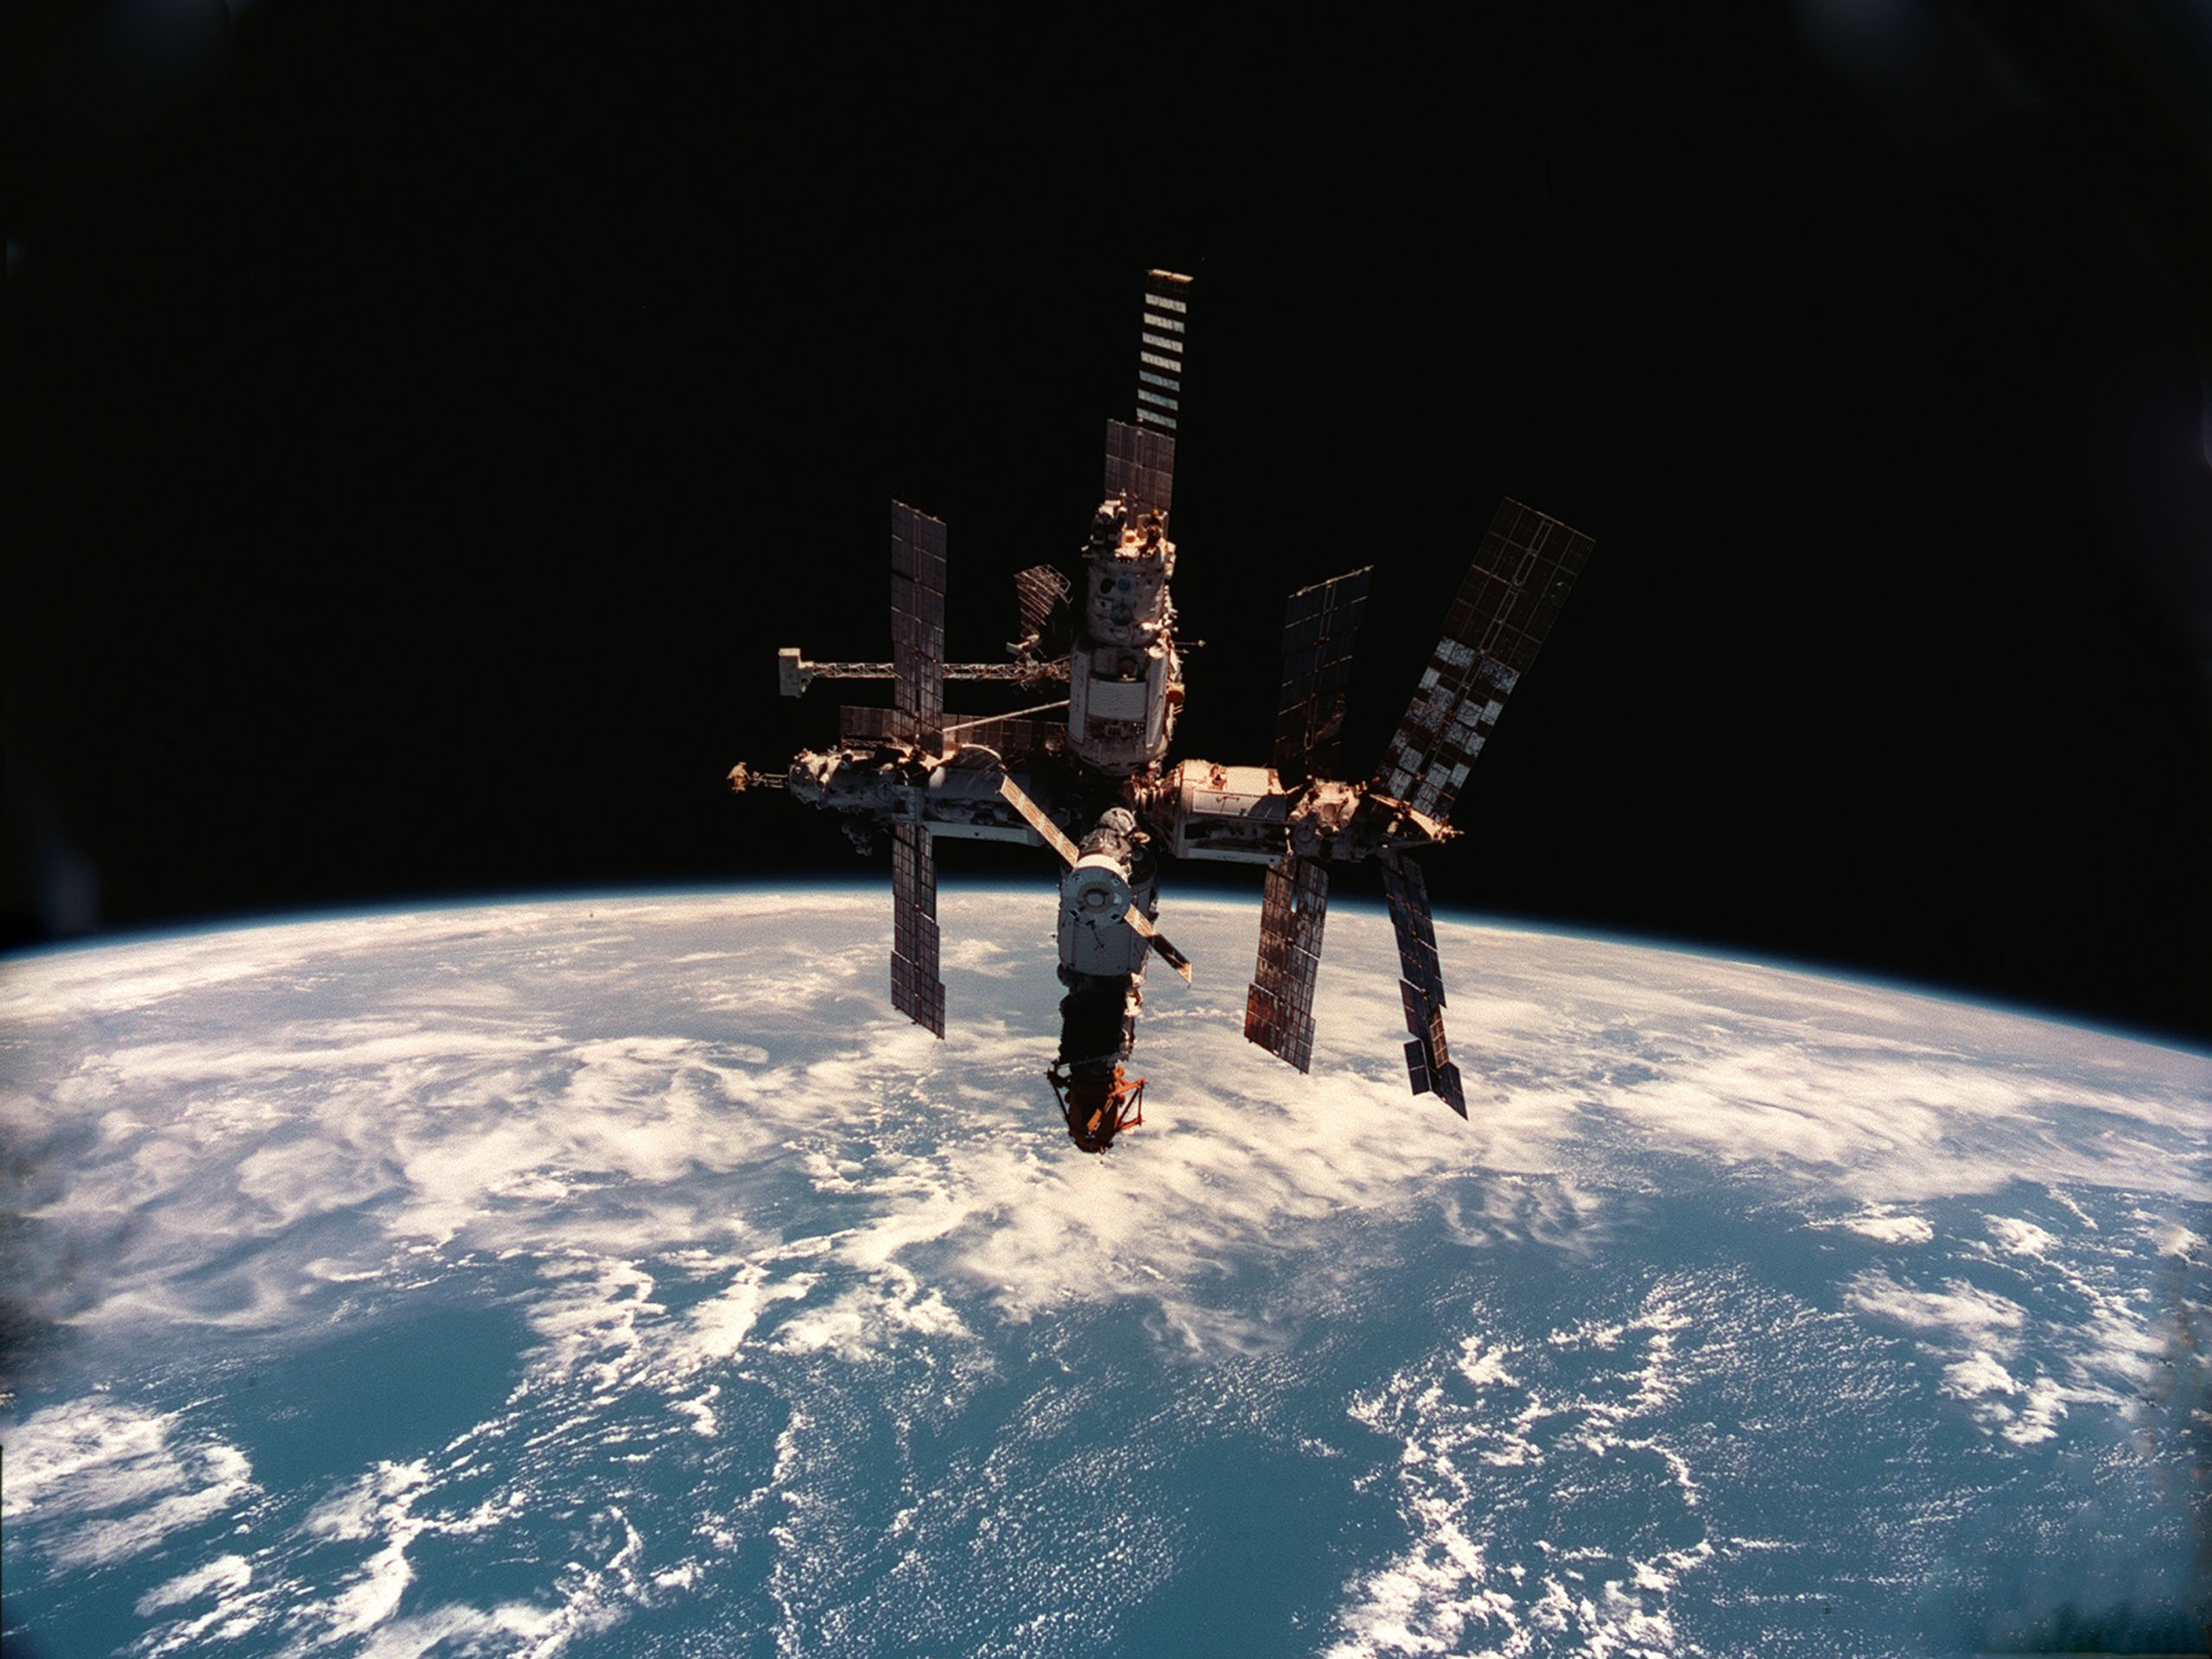 Mir org. Станция мир 1986. Космическая орбитальная станция мир. Космонавтика СССР орбитальная станция мир. Мир-2 орбитальная станция.